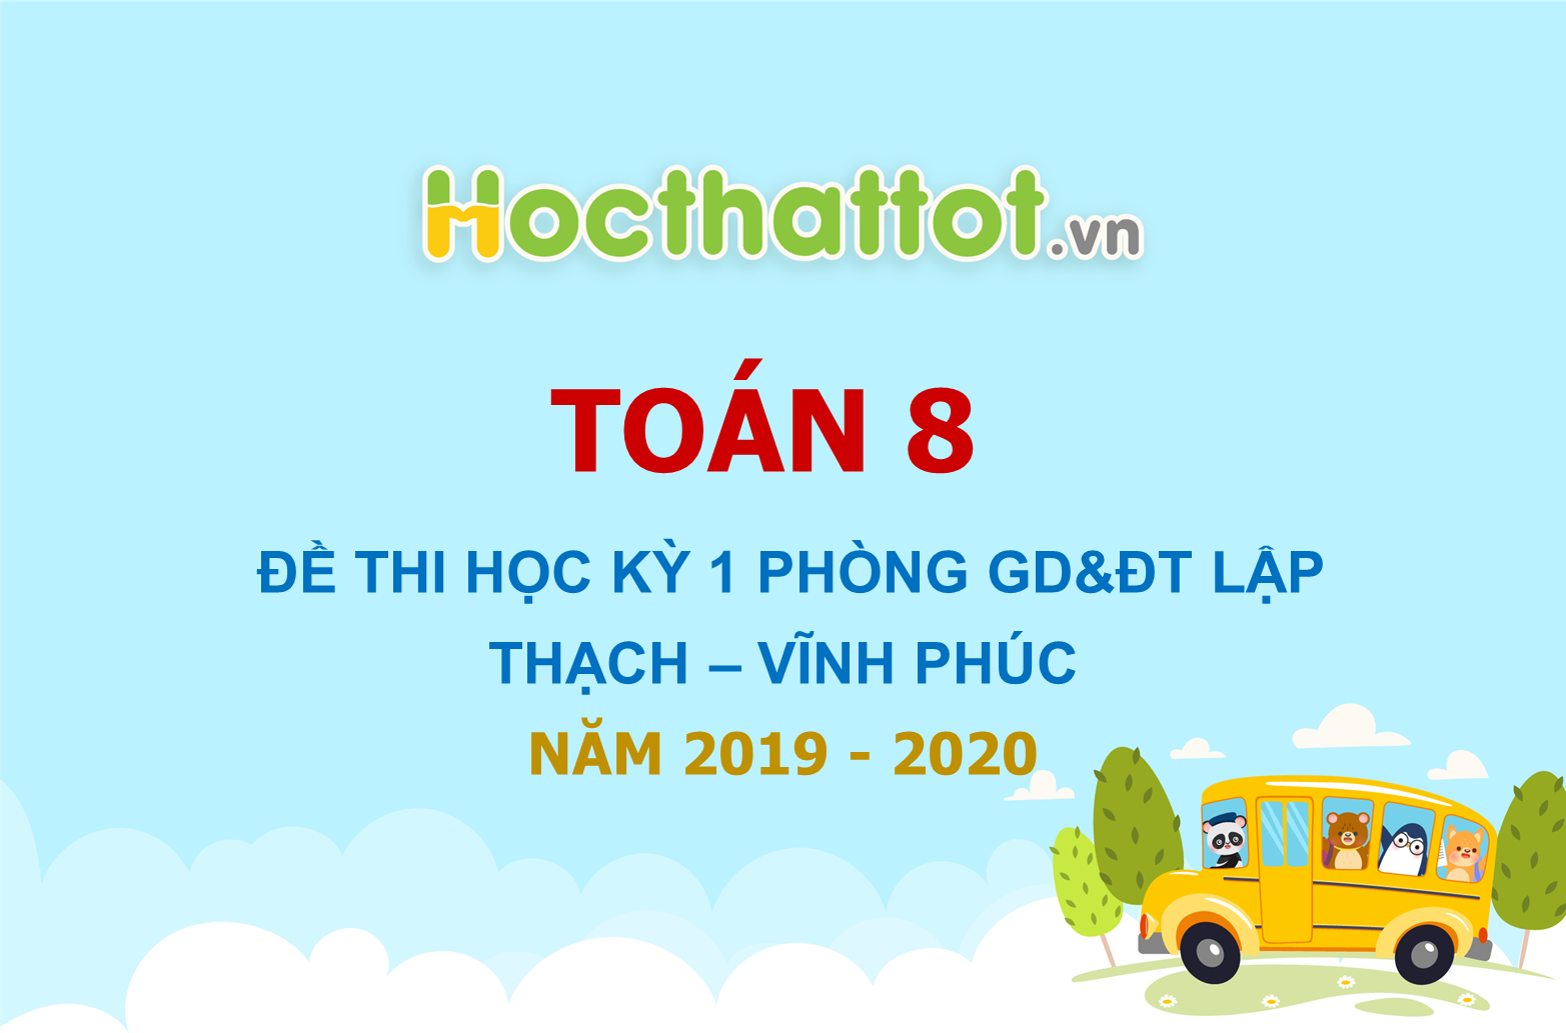 de-thi-hoc-ky-1-toan-8-nam-2019-2020-phong-gddt-lap-thach-vinh-phuc